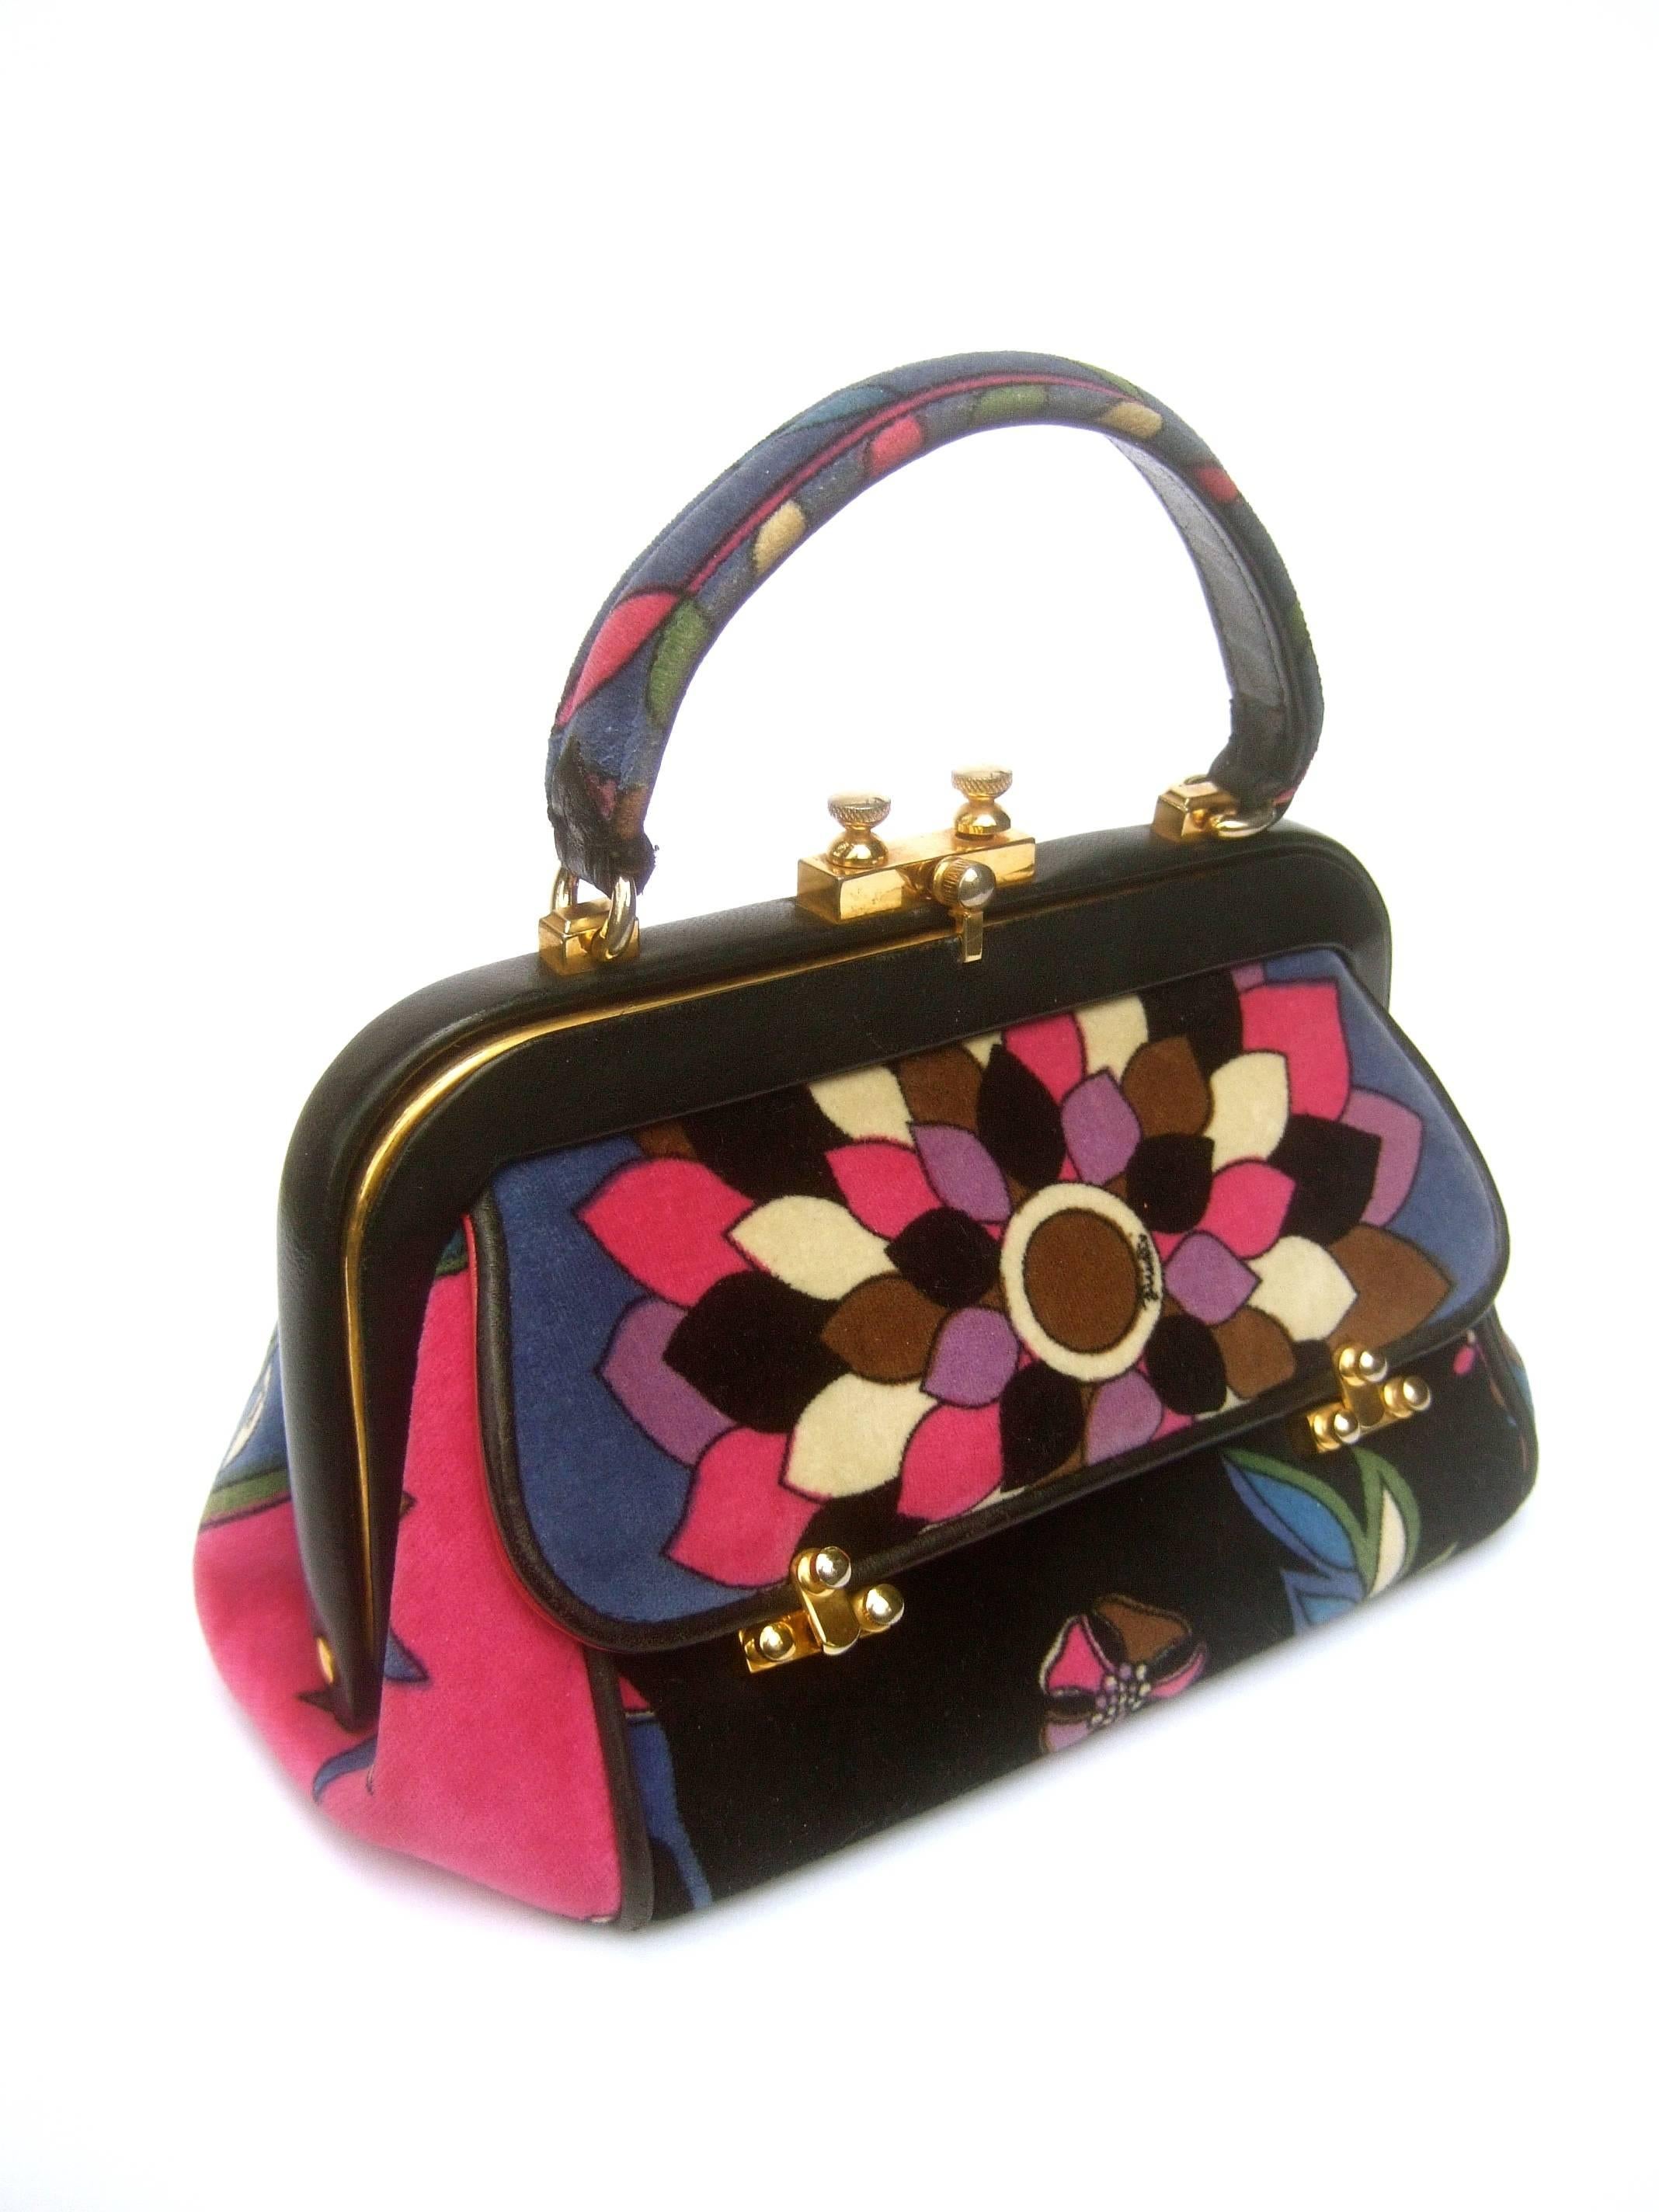 Women's Emilio Pucci Rare Velvet Leather Trim Handbag ca 1970